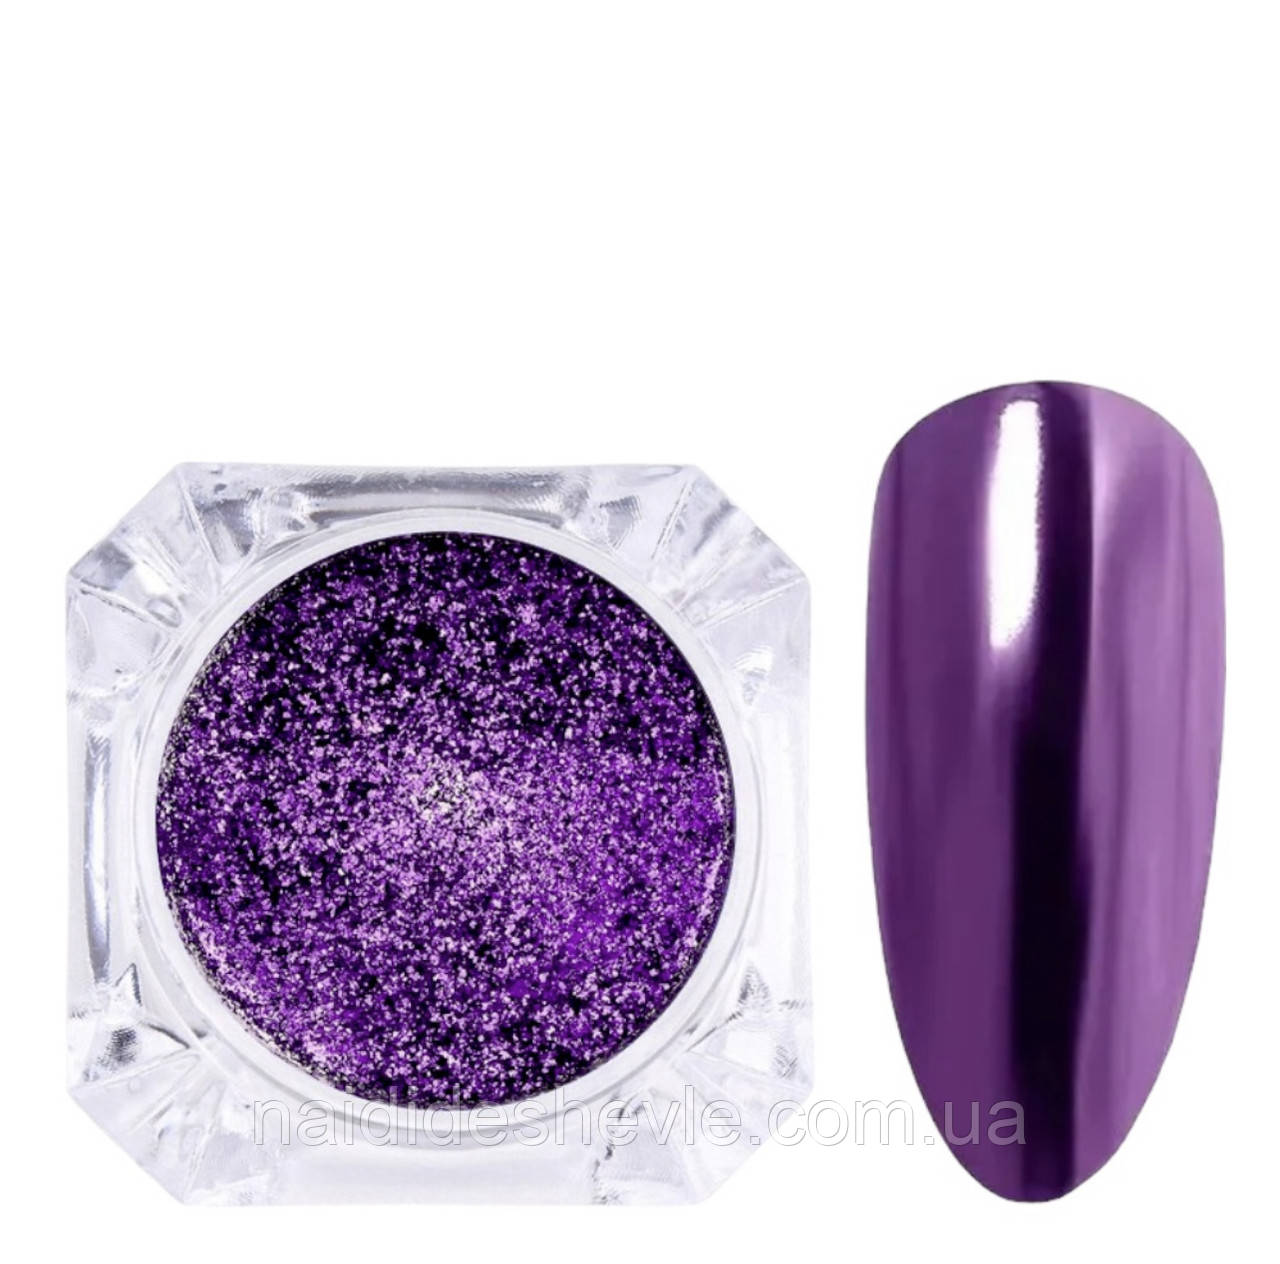 Дзеркальне фіолетове втирання (пігмент)  для дизайну нігтів Night Charm Purple